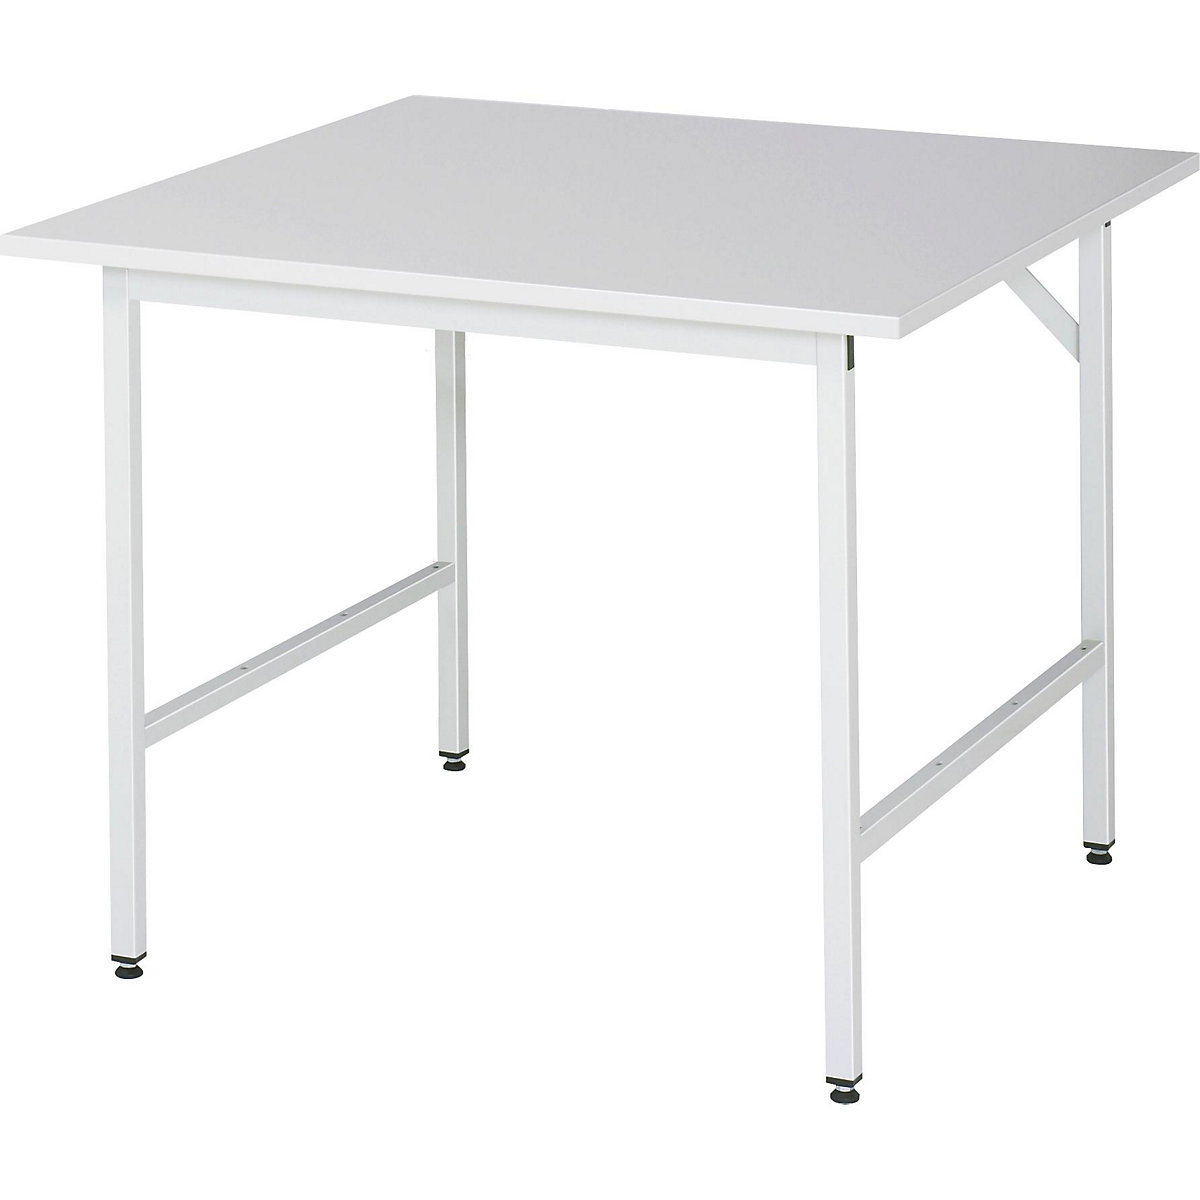 Stół roboczy, z regulacją wysokości – RAU, 800 – 850 mm, blat z płyty wiórowej, pokryty melaminą, szer. x głęb. 1000 x 1000 mm, jasnoszary-11